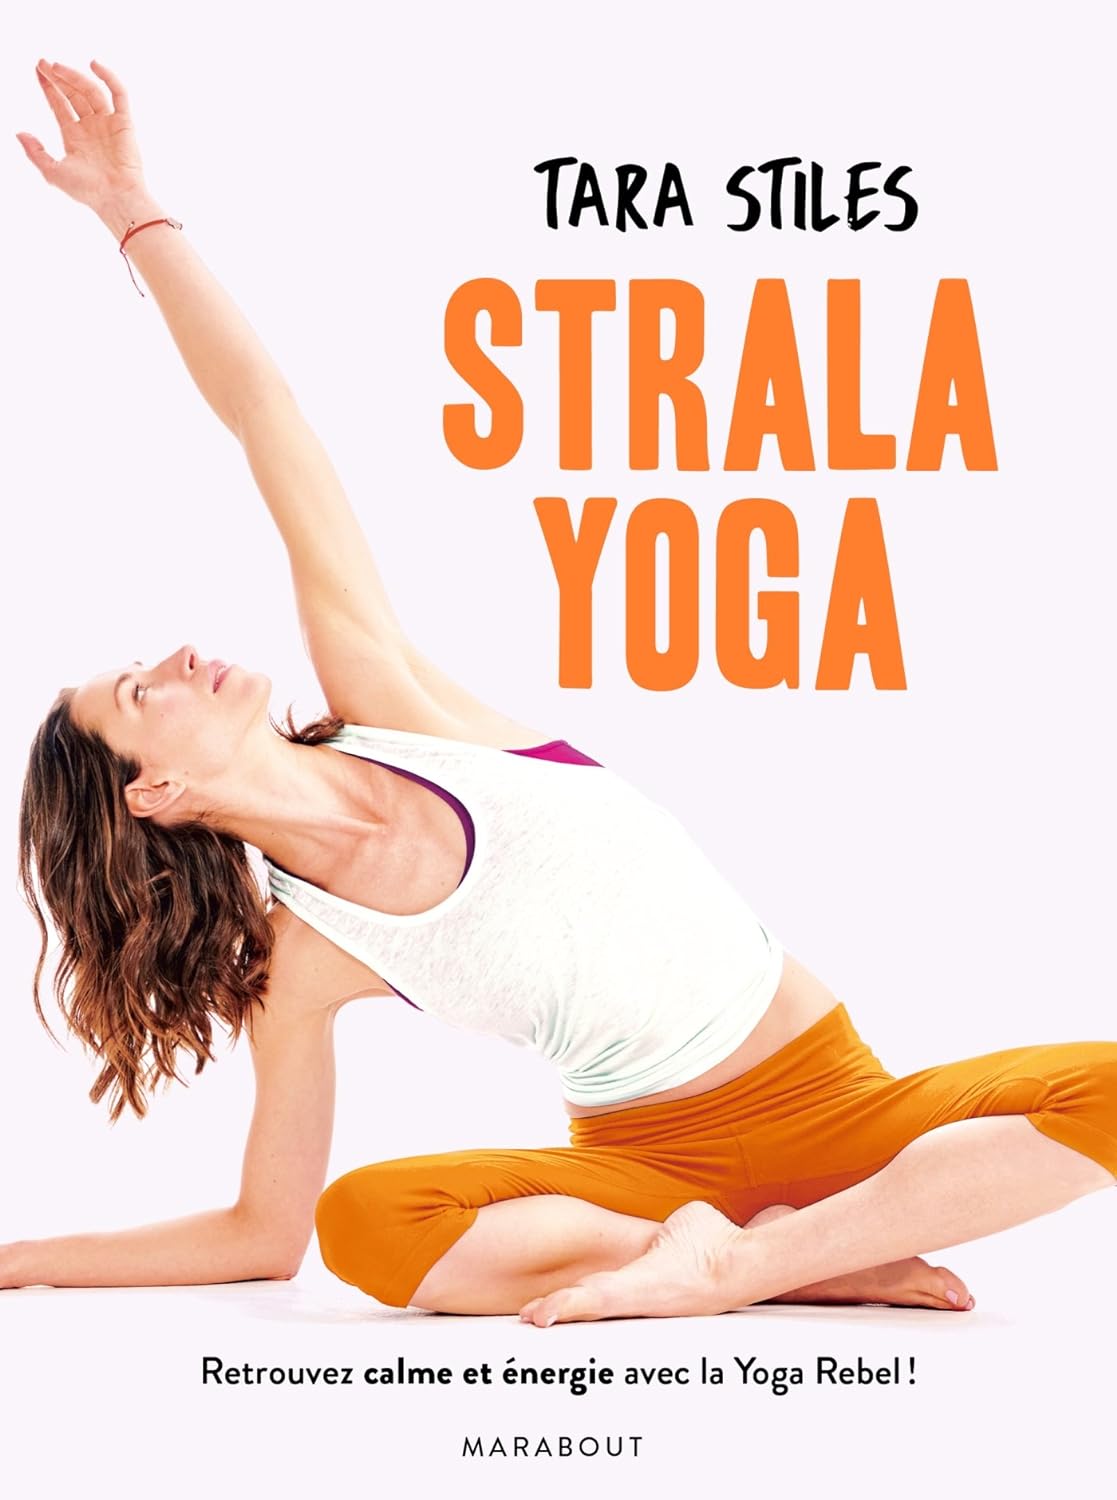 Strala yoga: Retrouvez énergie et concentration grâce à une méthode originale - Tara Stiles